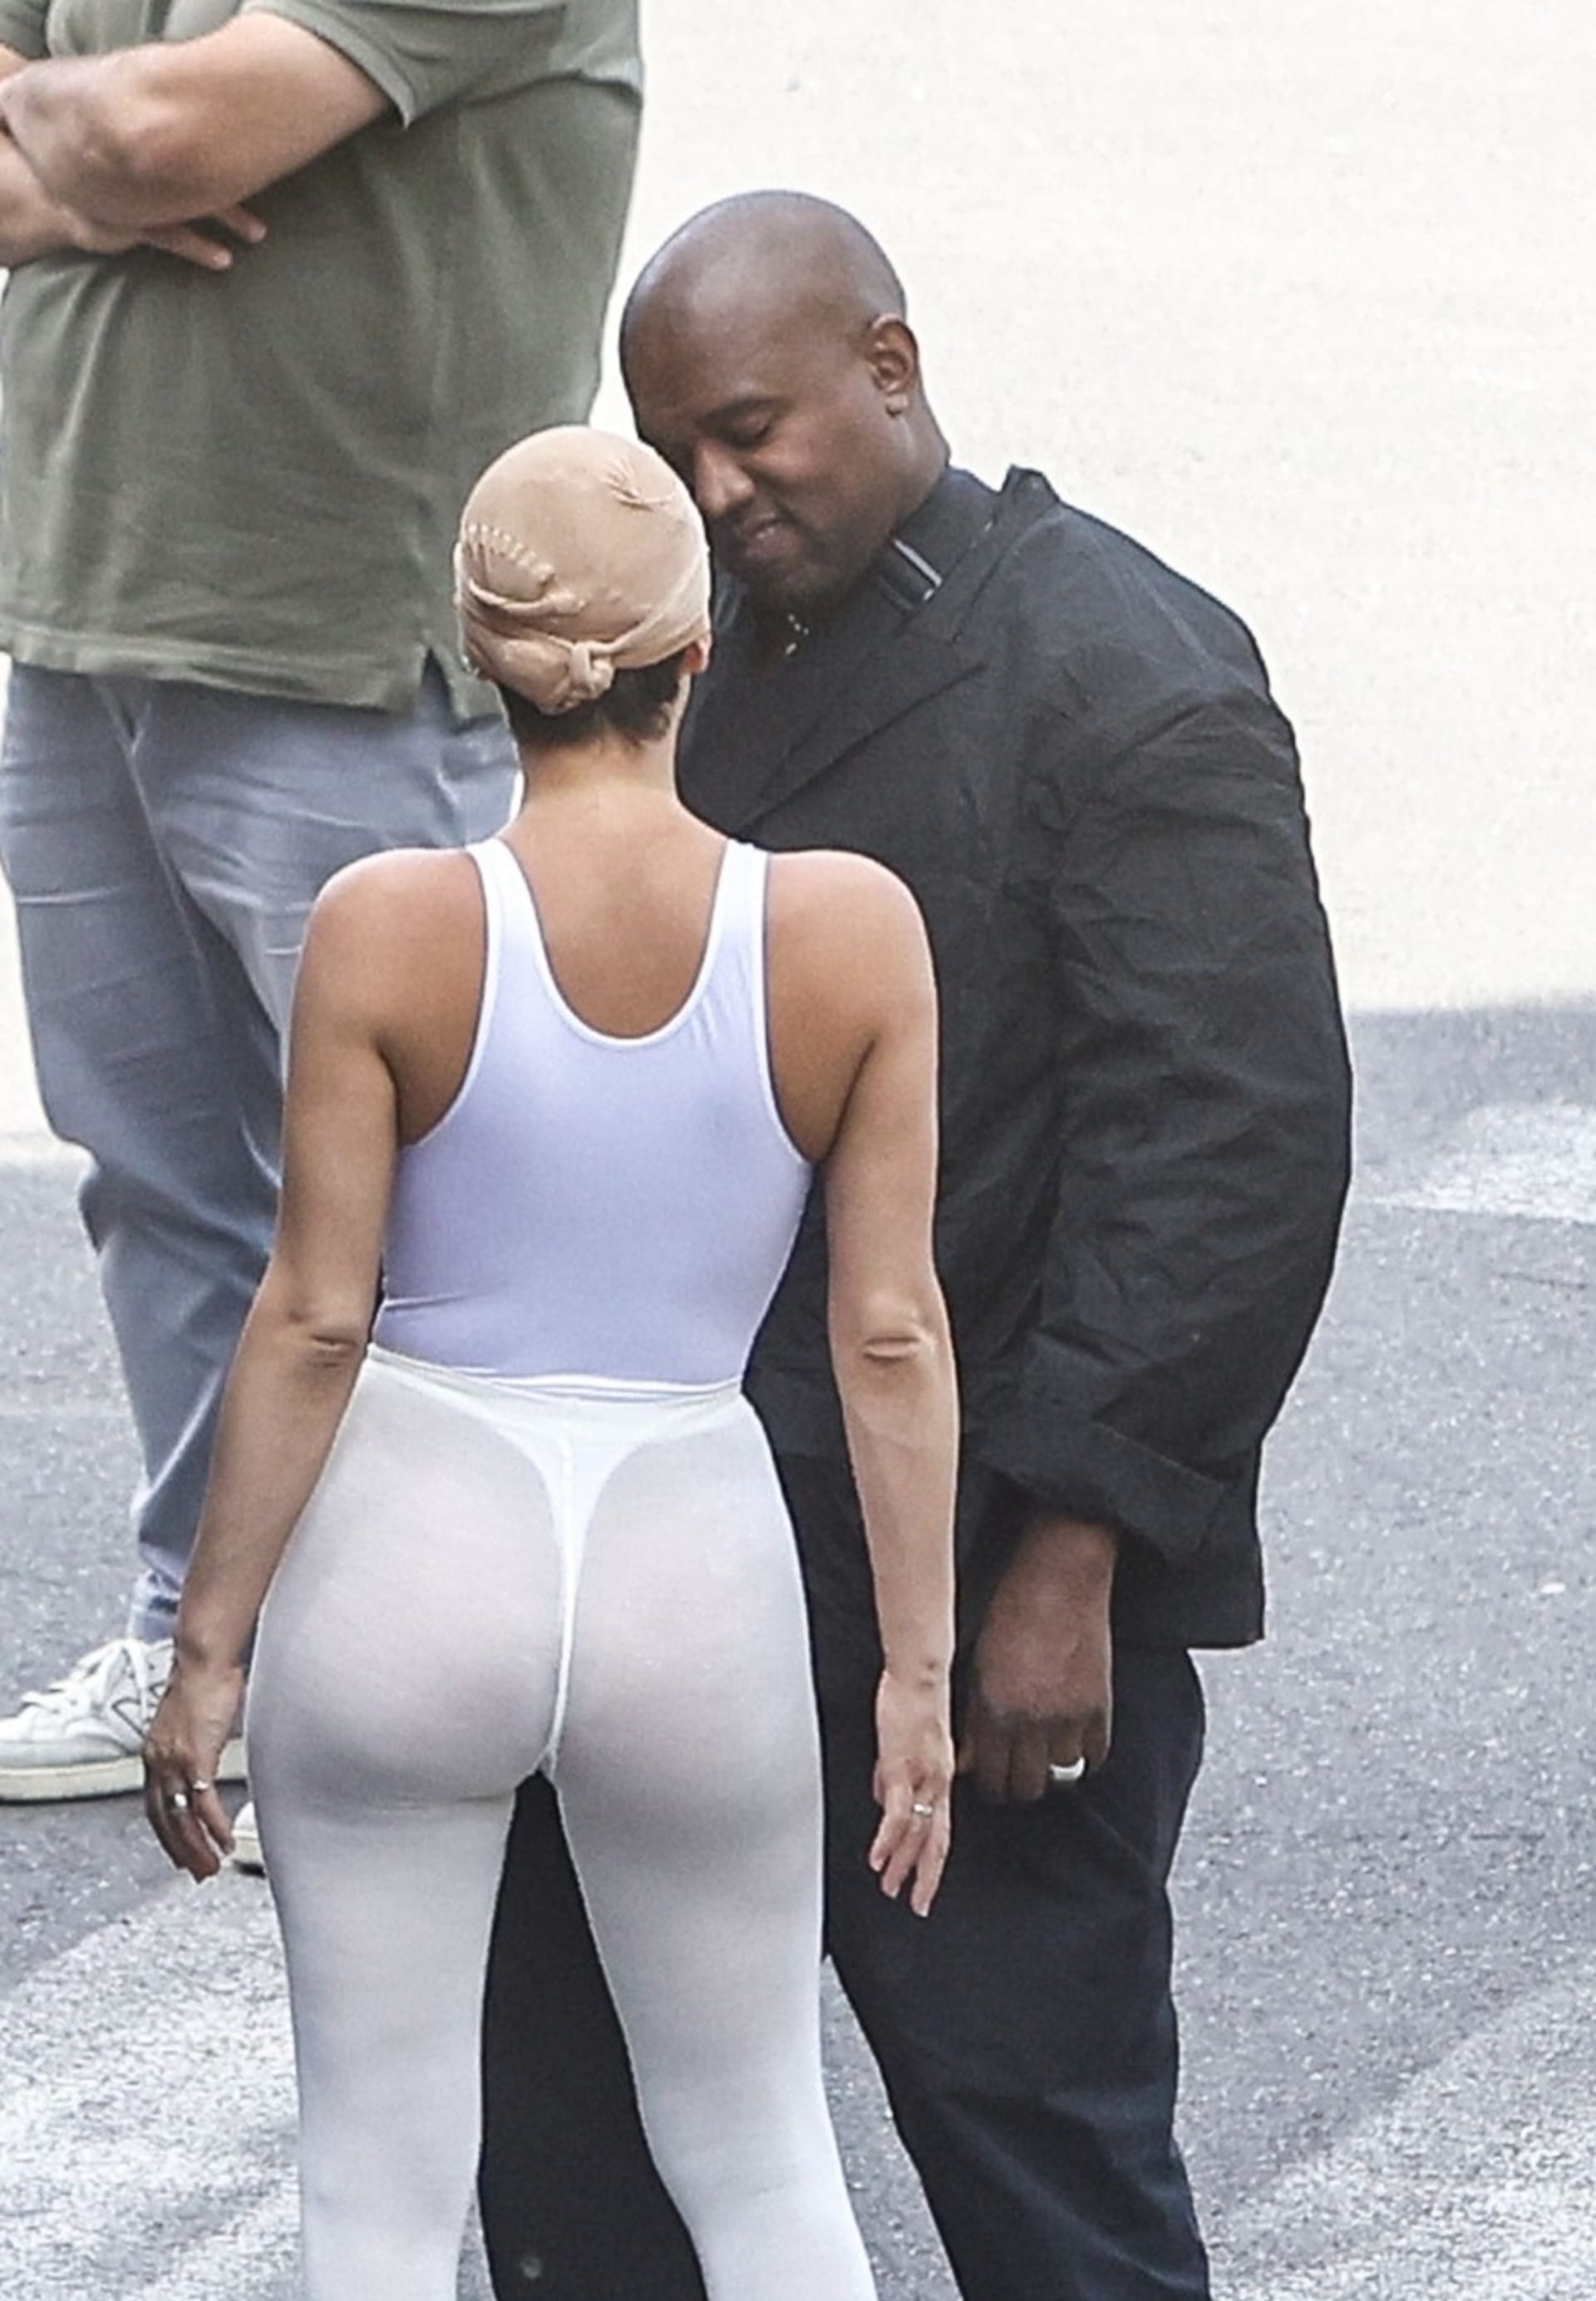 Manželka slavného rappera s oblibou na veřejnosti ukazuje i své kalhotky.